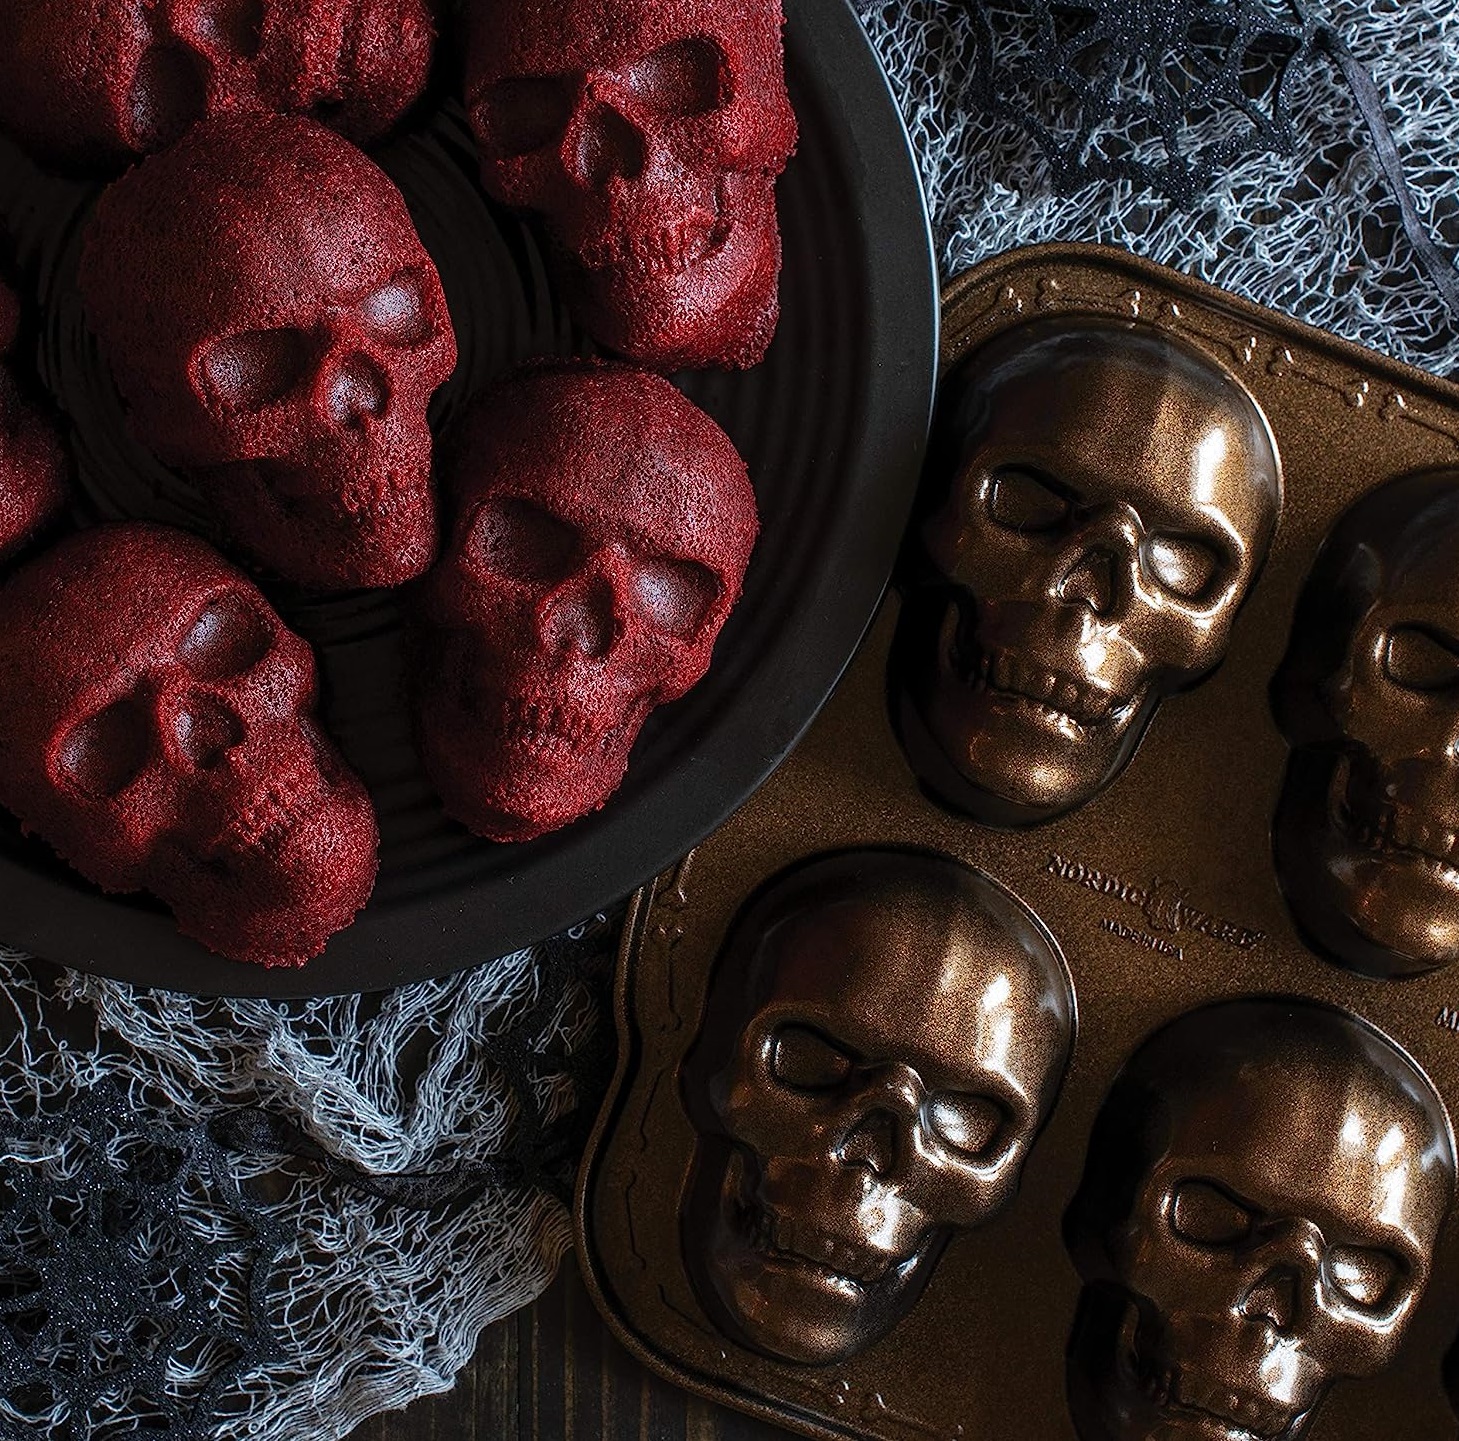 💀 Early Halloween Sale 60% OFF 🎃 3D Skull Mold - Aluminum Baking Pan